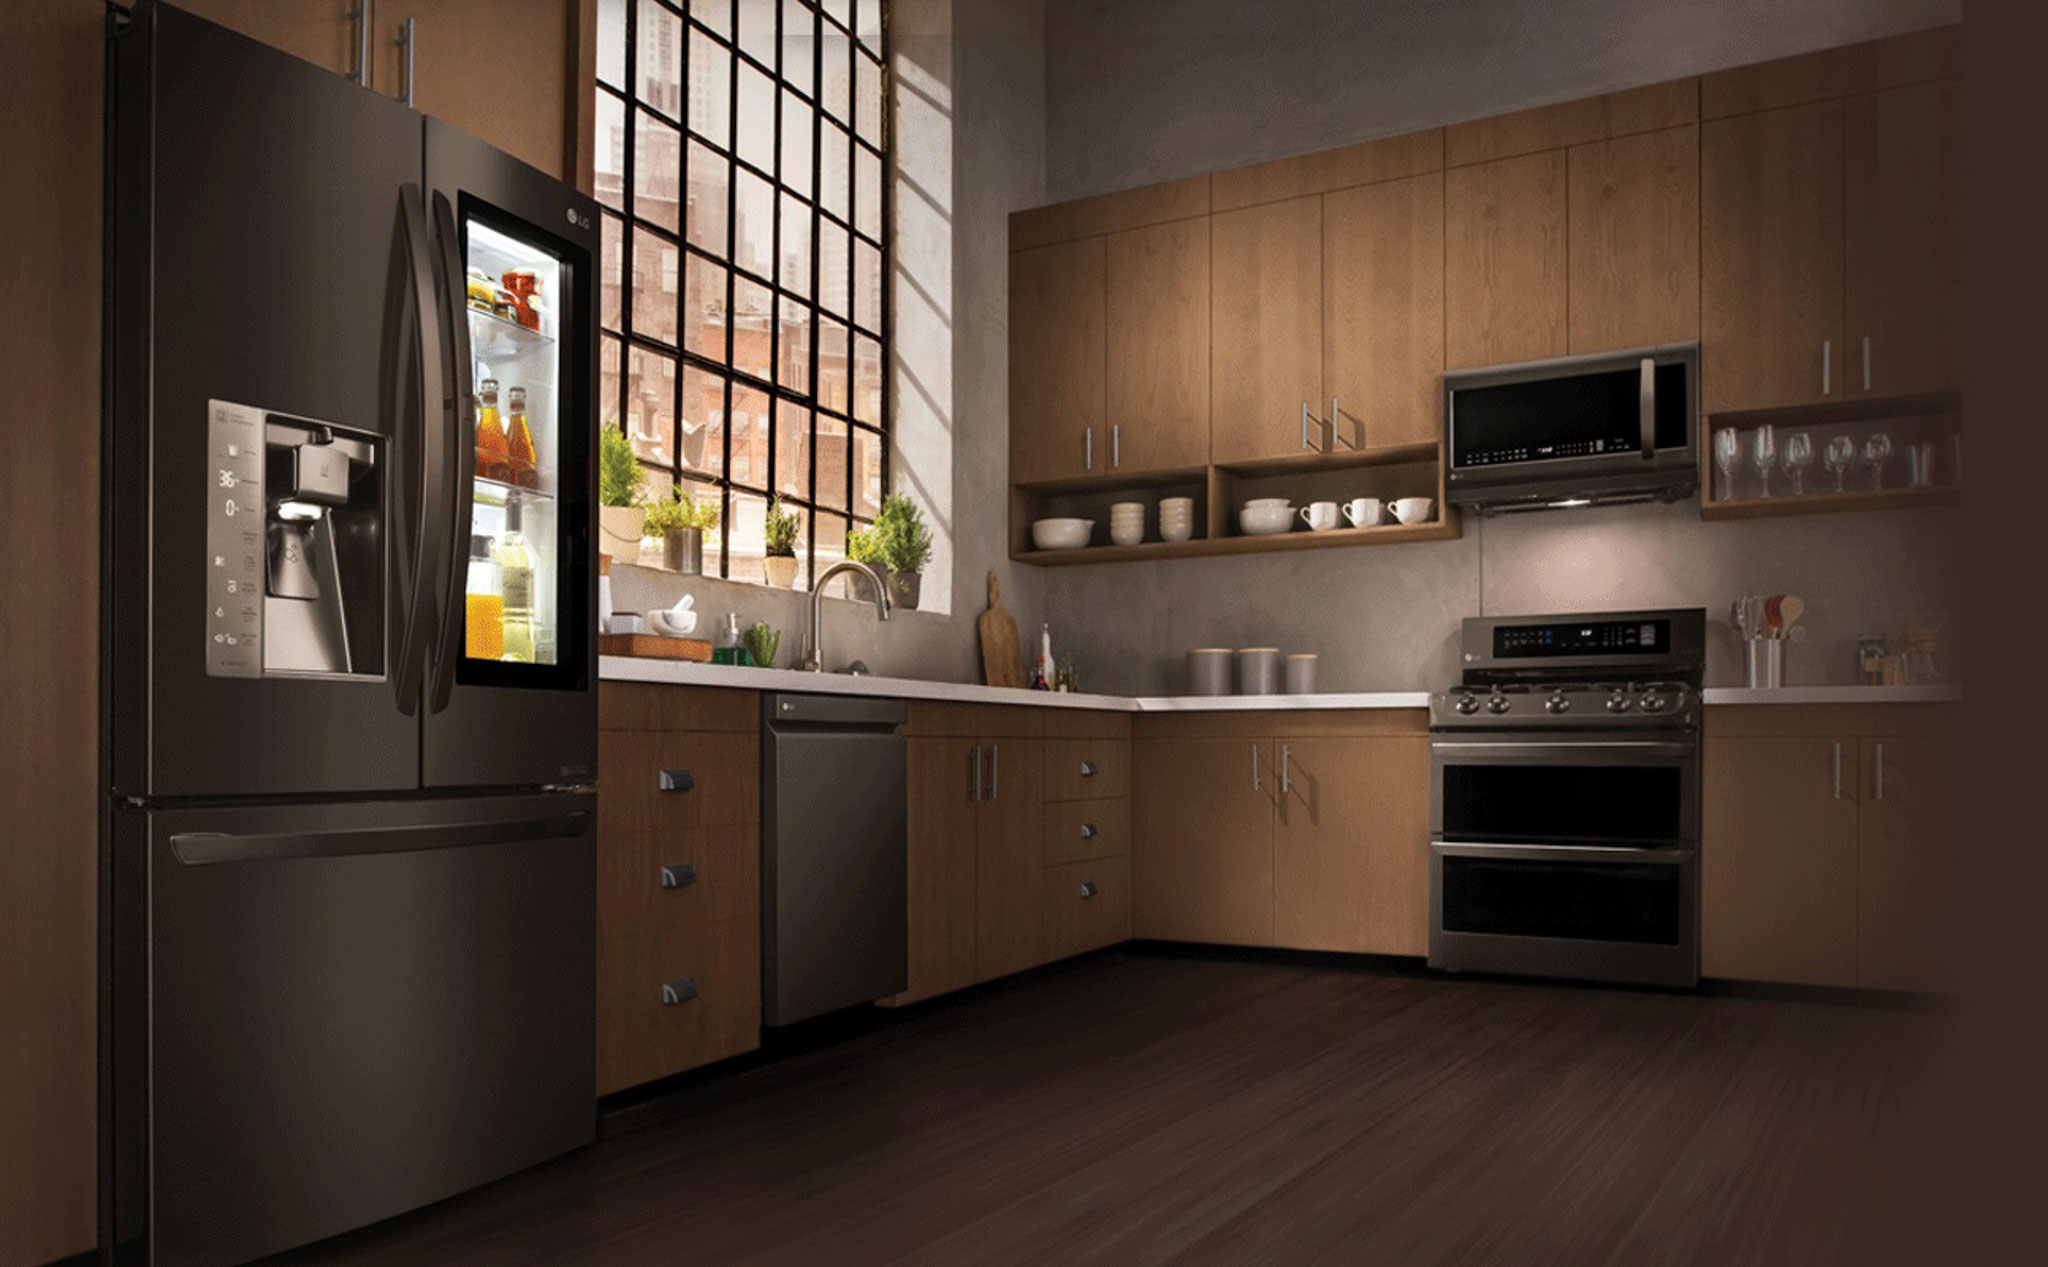 LG sẽ công bố các đối tác tại CES nhằm mang đến cho người tiêu dùng một căn bếp hiện đại